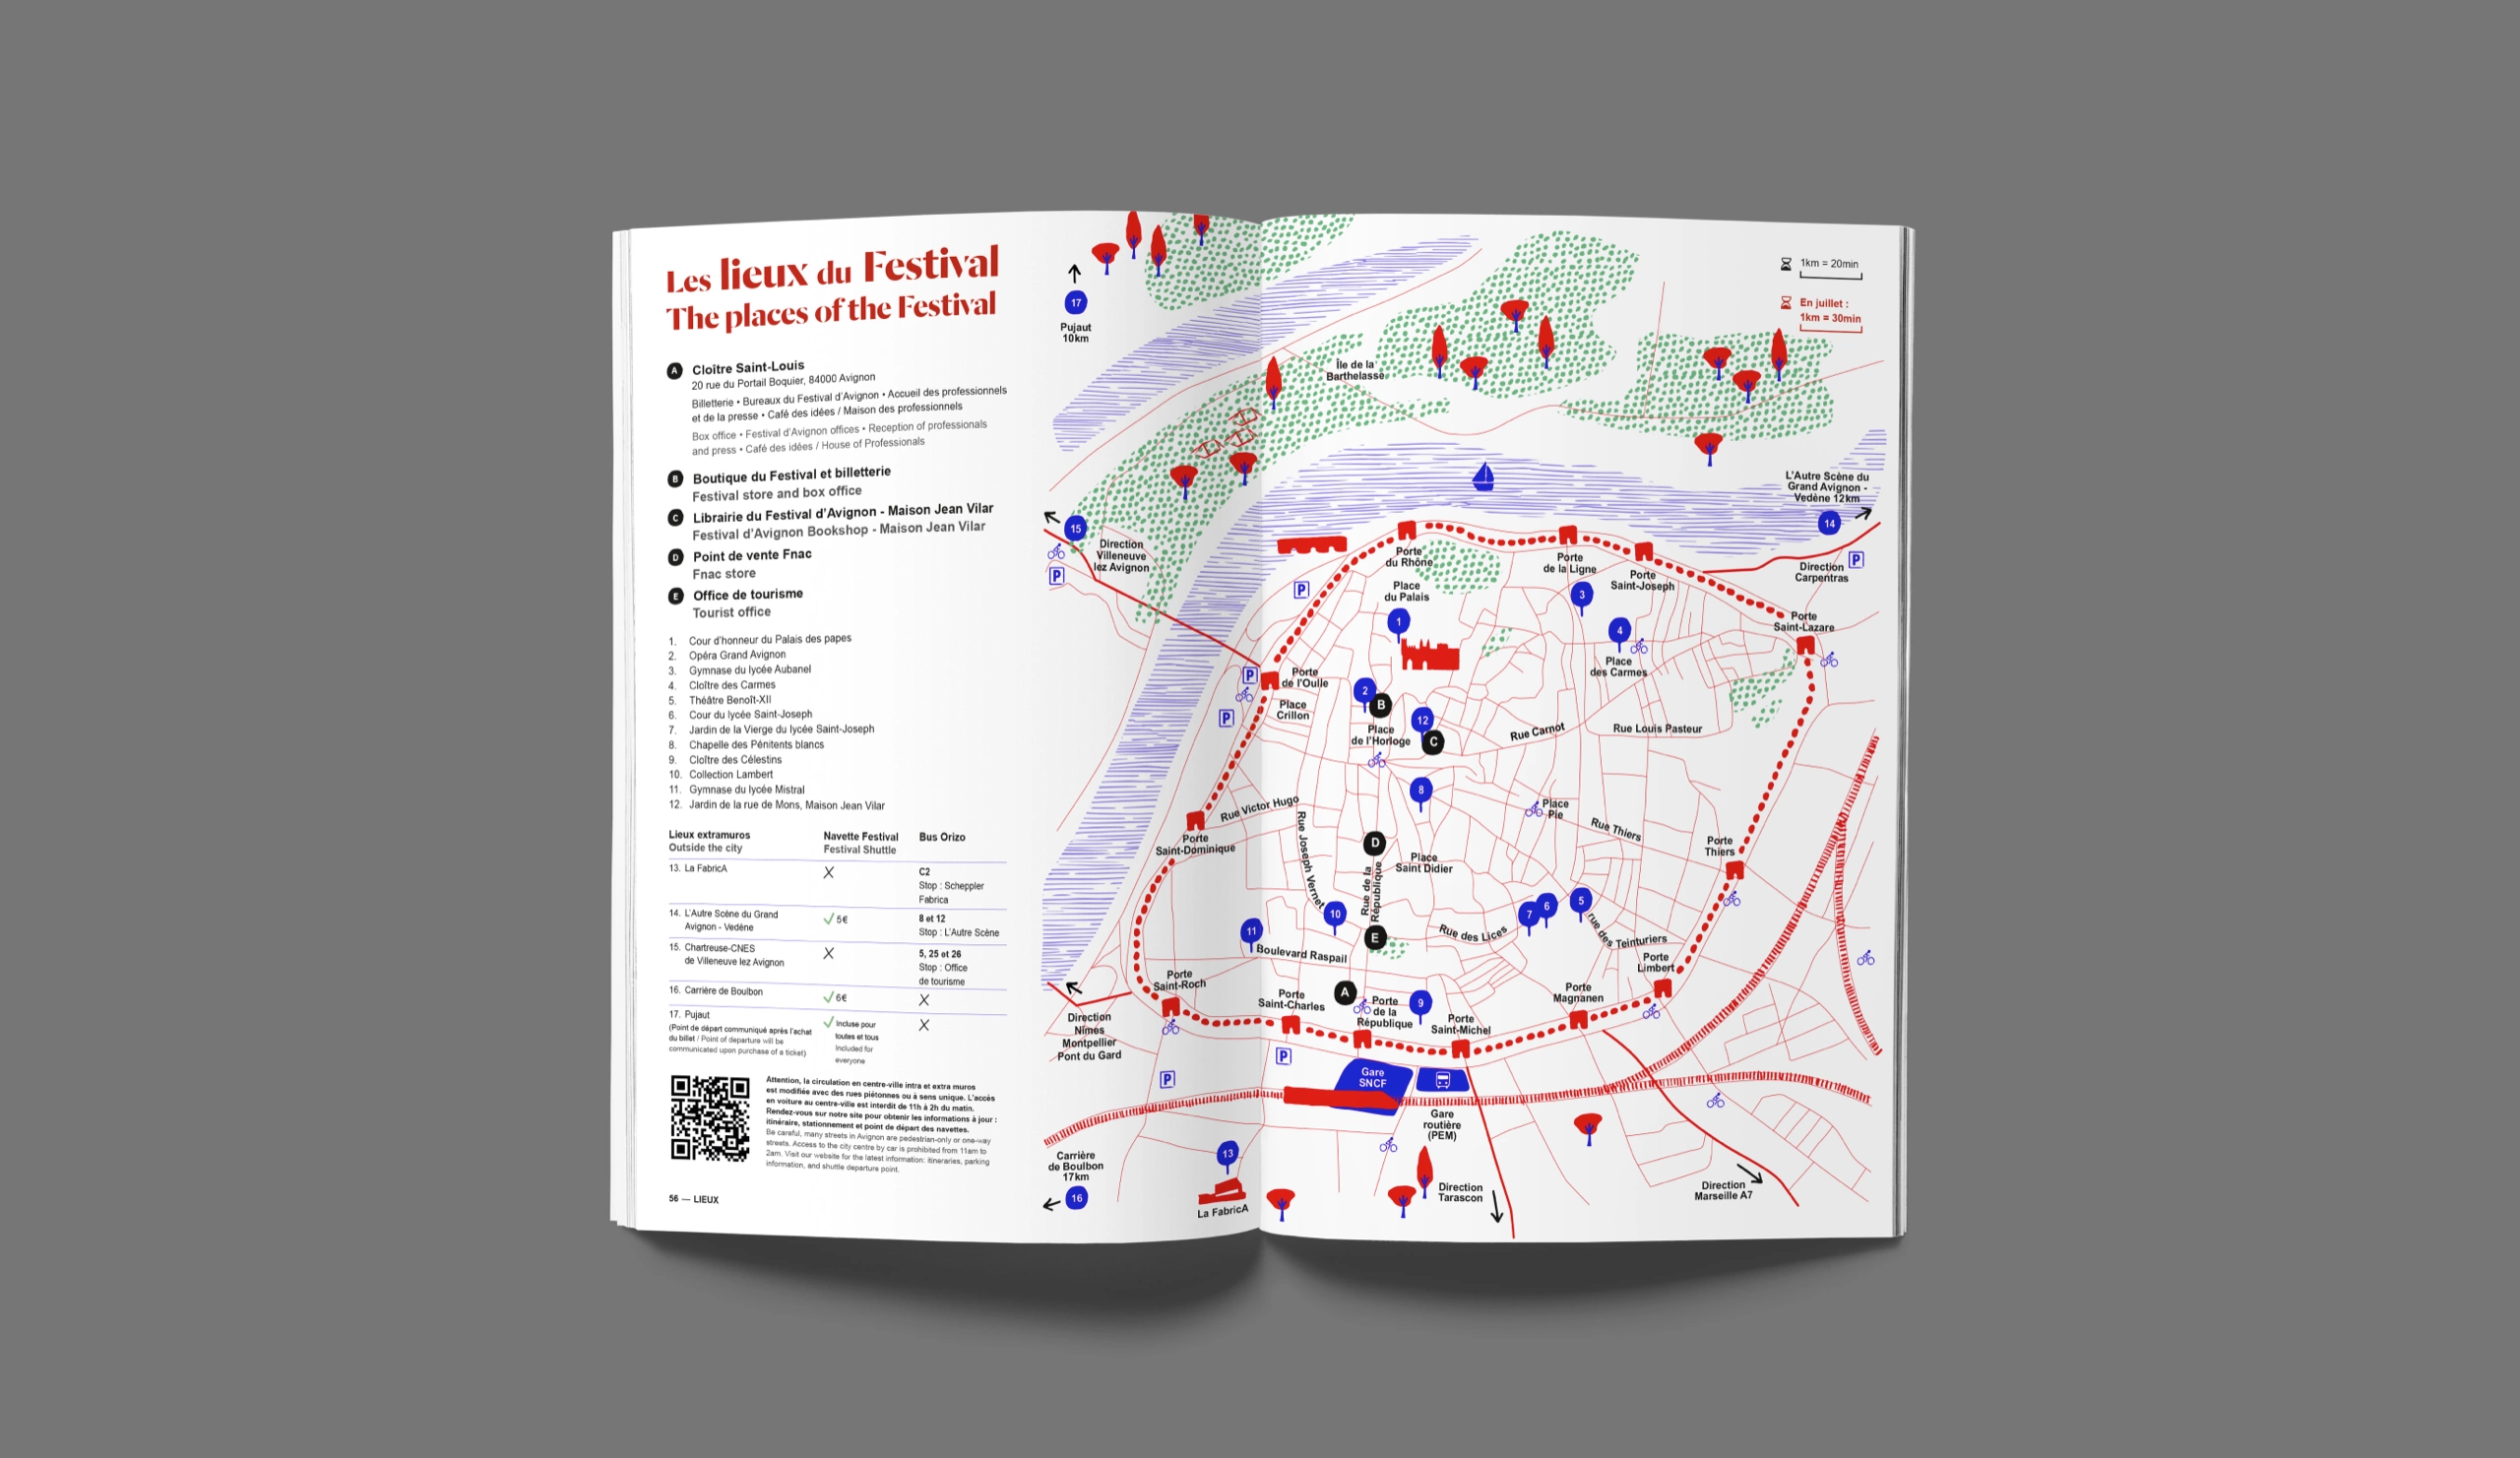 Aperçu de la brochure intérieur : carte des lieux du festival